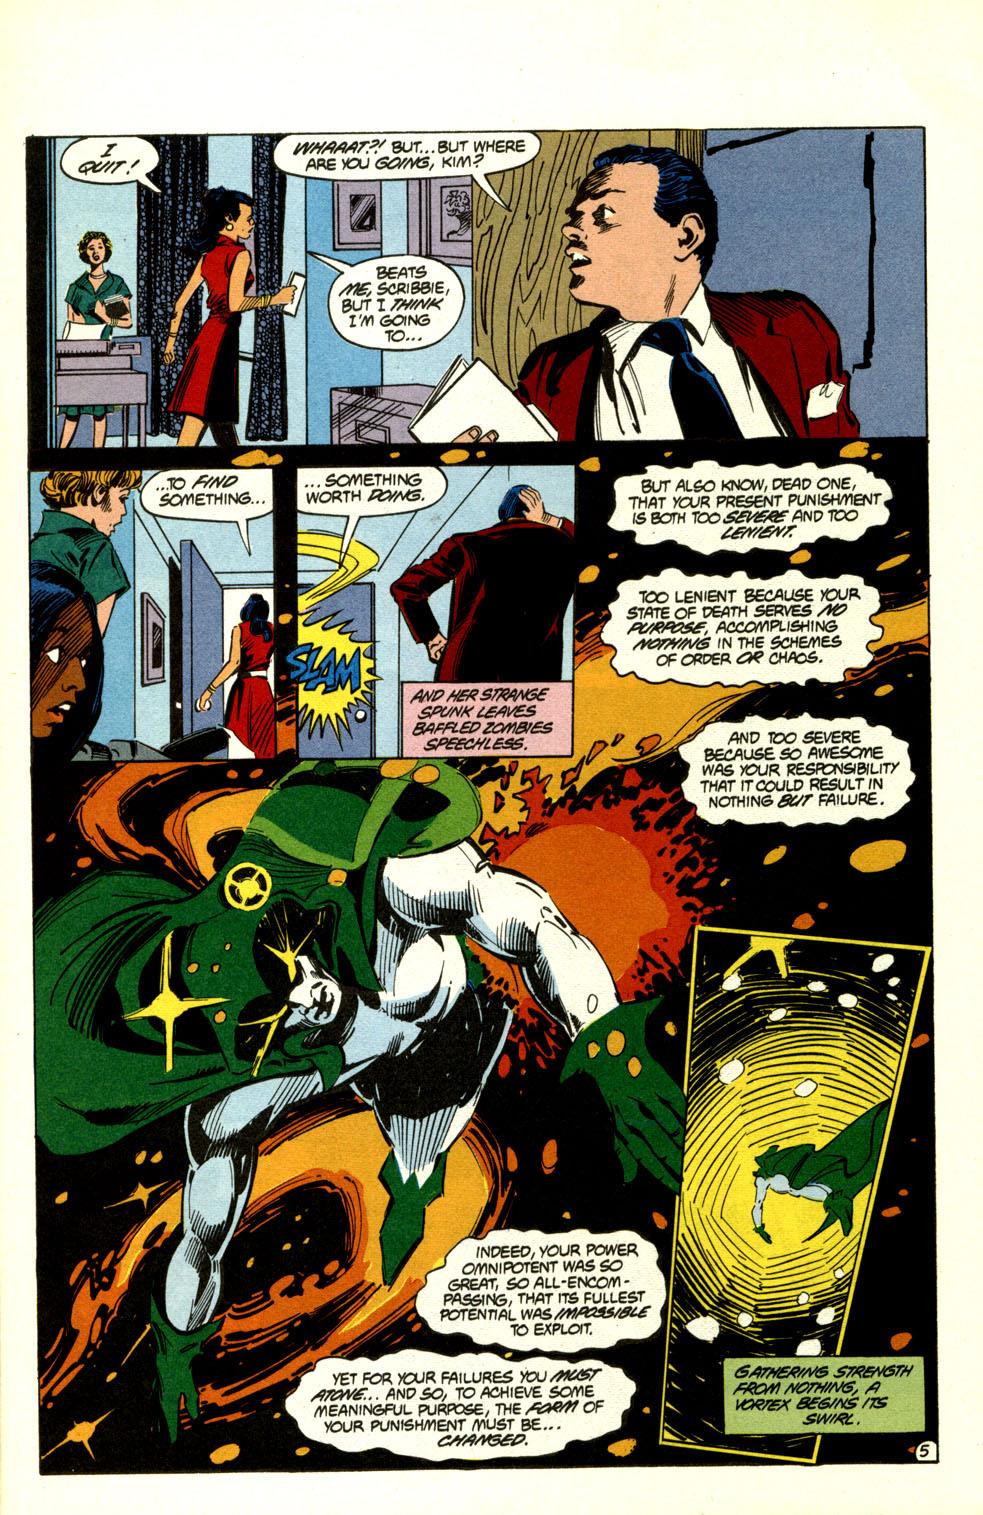 Universo 3: Dois grandes herois - Capítulo 29, Página 644 - DBMultiverse